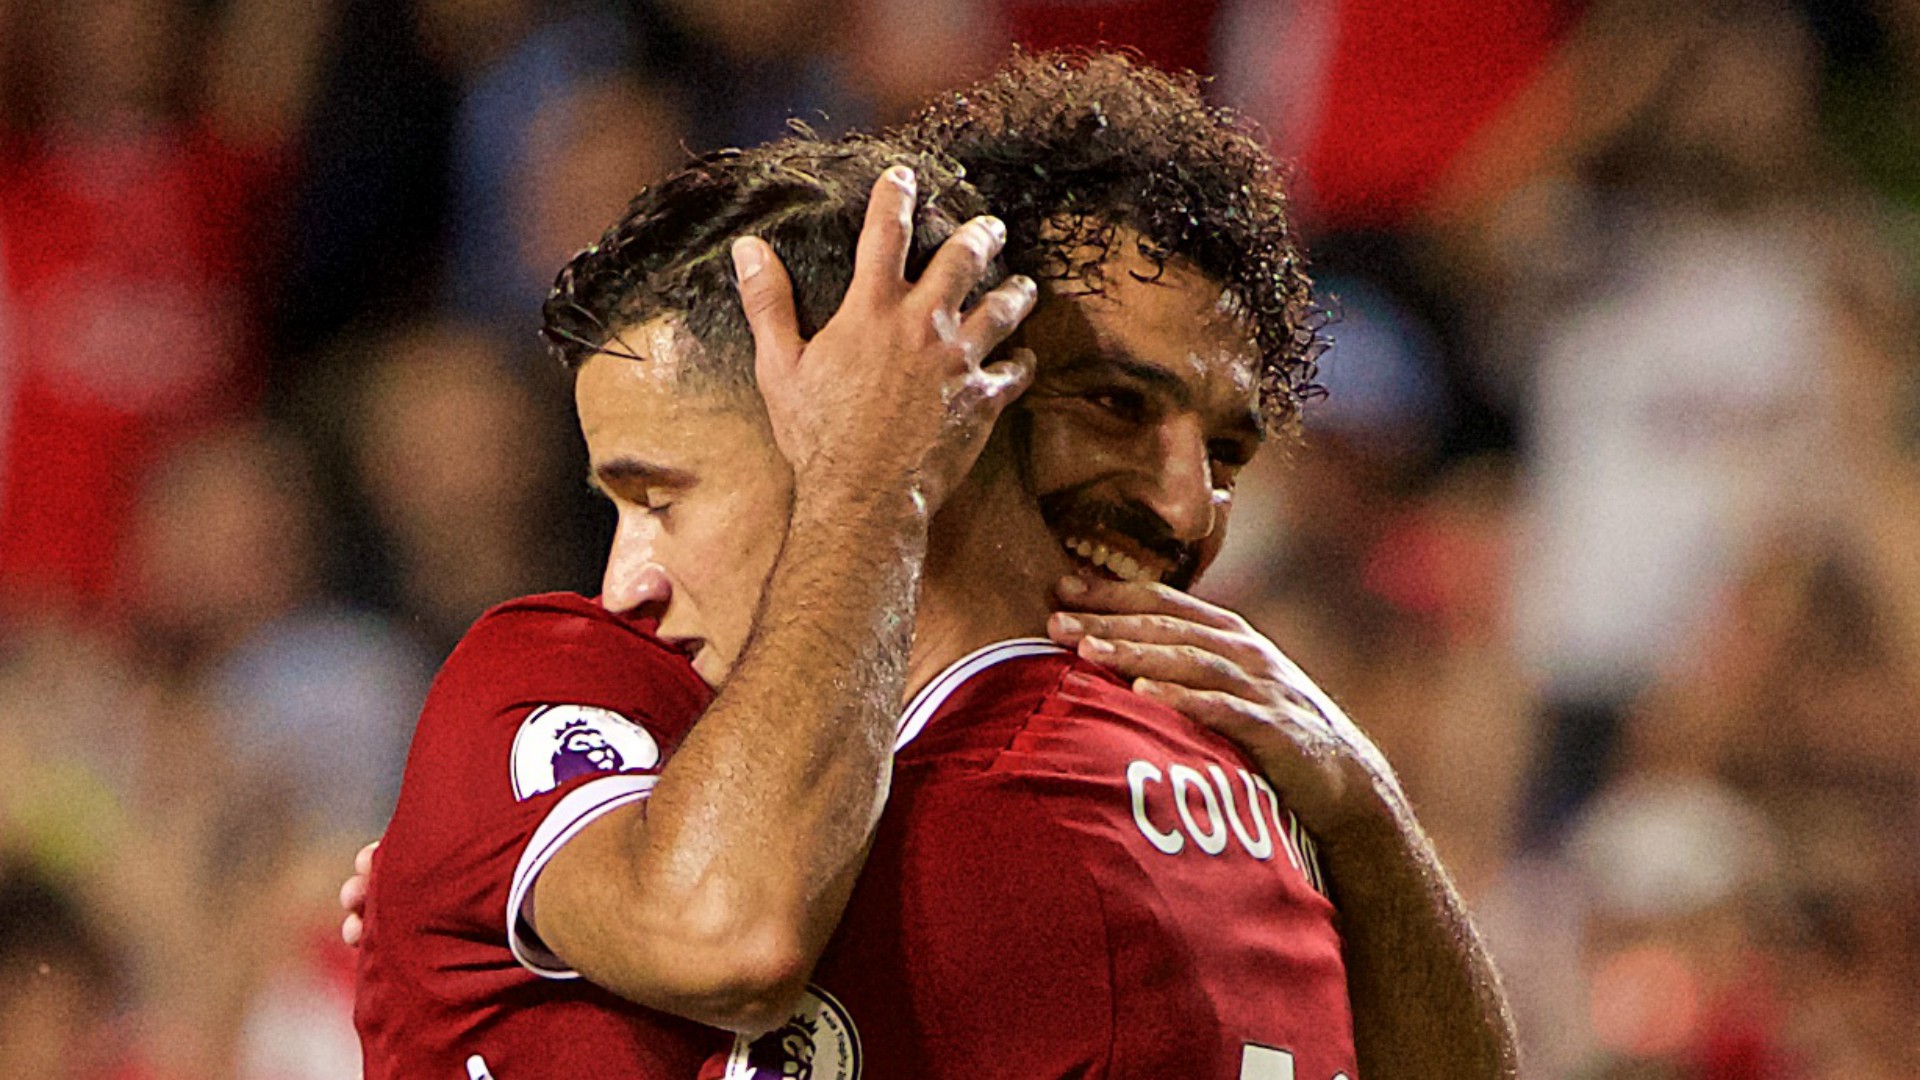 Mất 3 tháng Salah đã ghi bàn bằng thành tích của Coutinho ở cả mùa trước